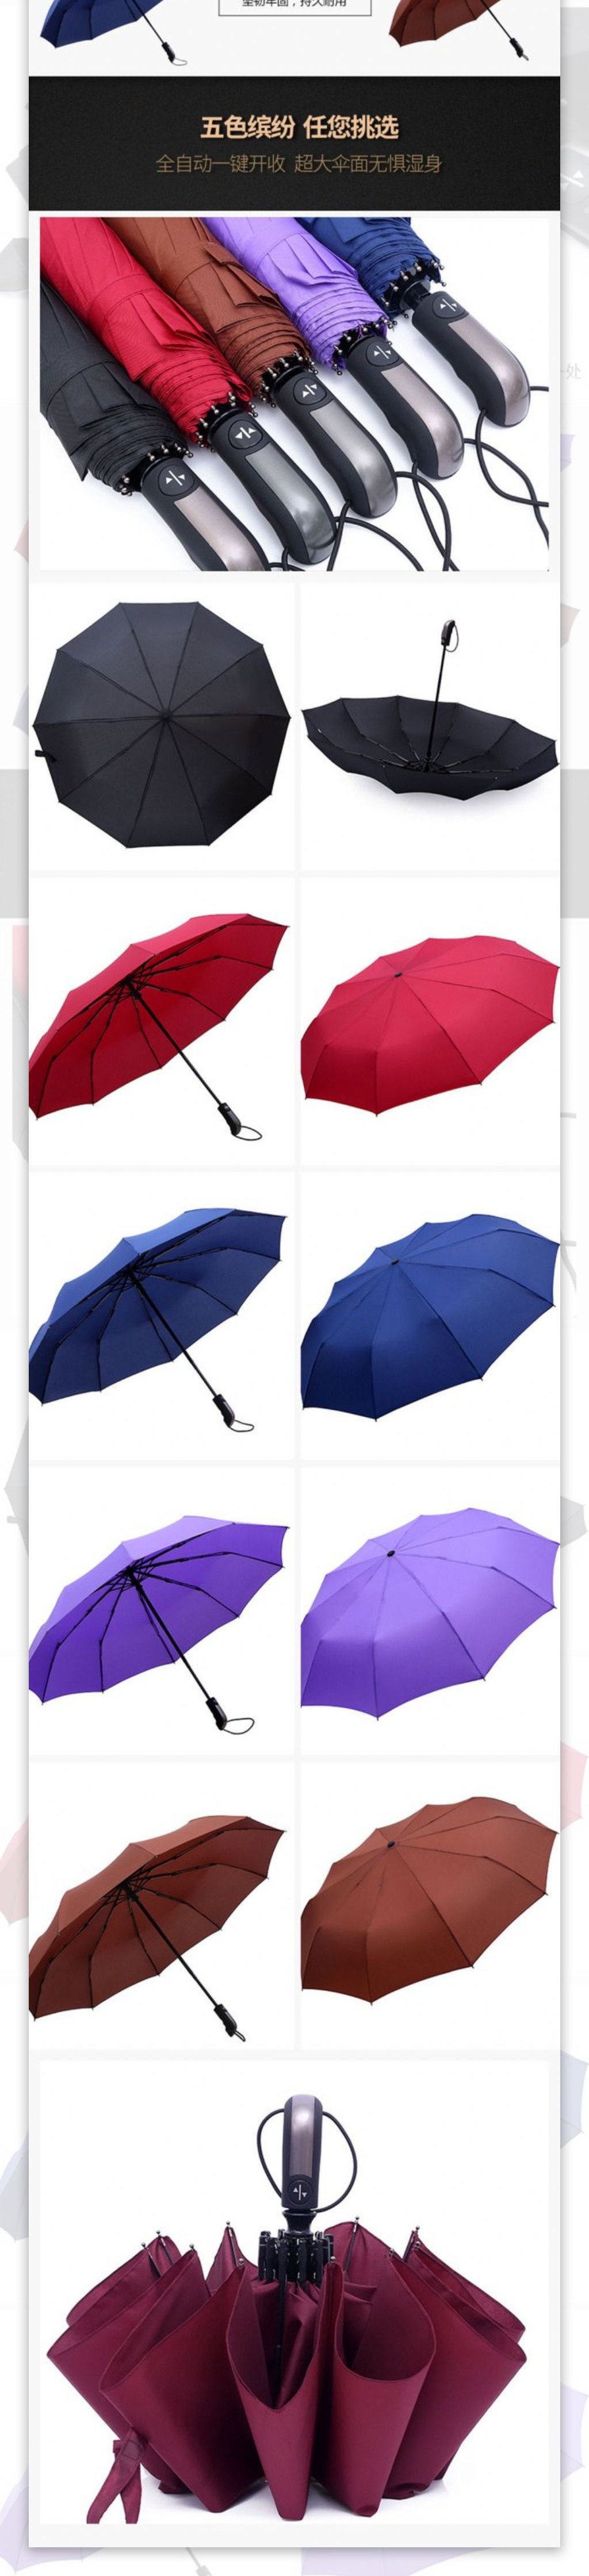 雨伞详情设计模板